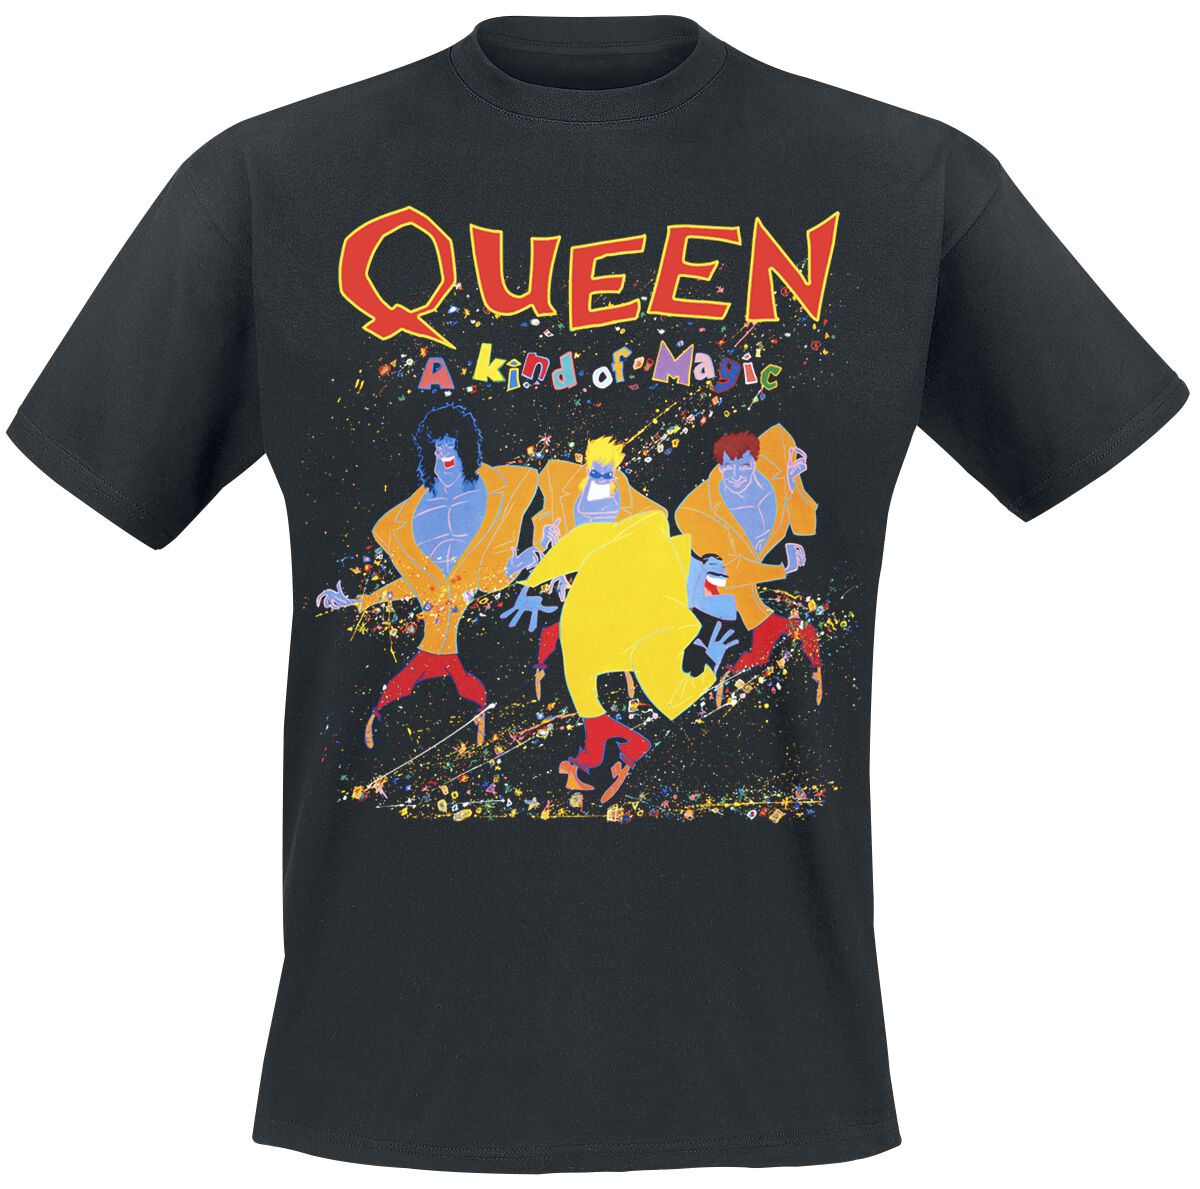 Queen T-Shirt - A Kind Of Magic - S bis 5XL - für Männer - Größe XL - schwarz  - Lizenziertes Merchandise!